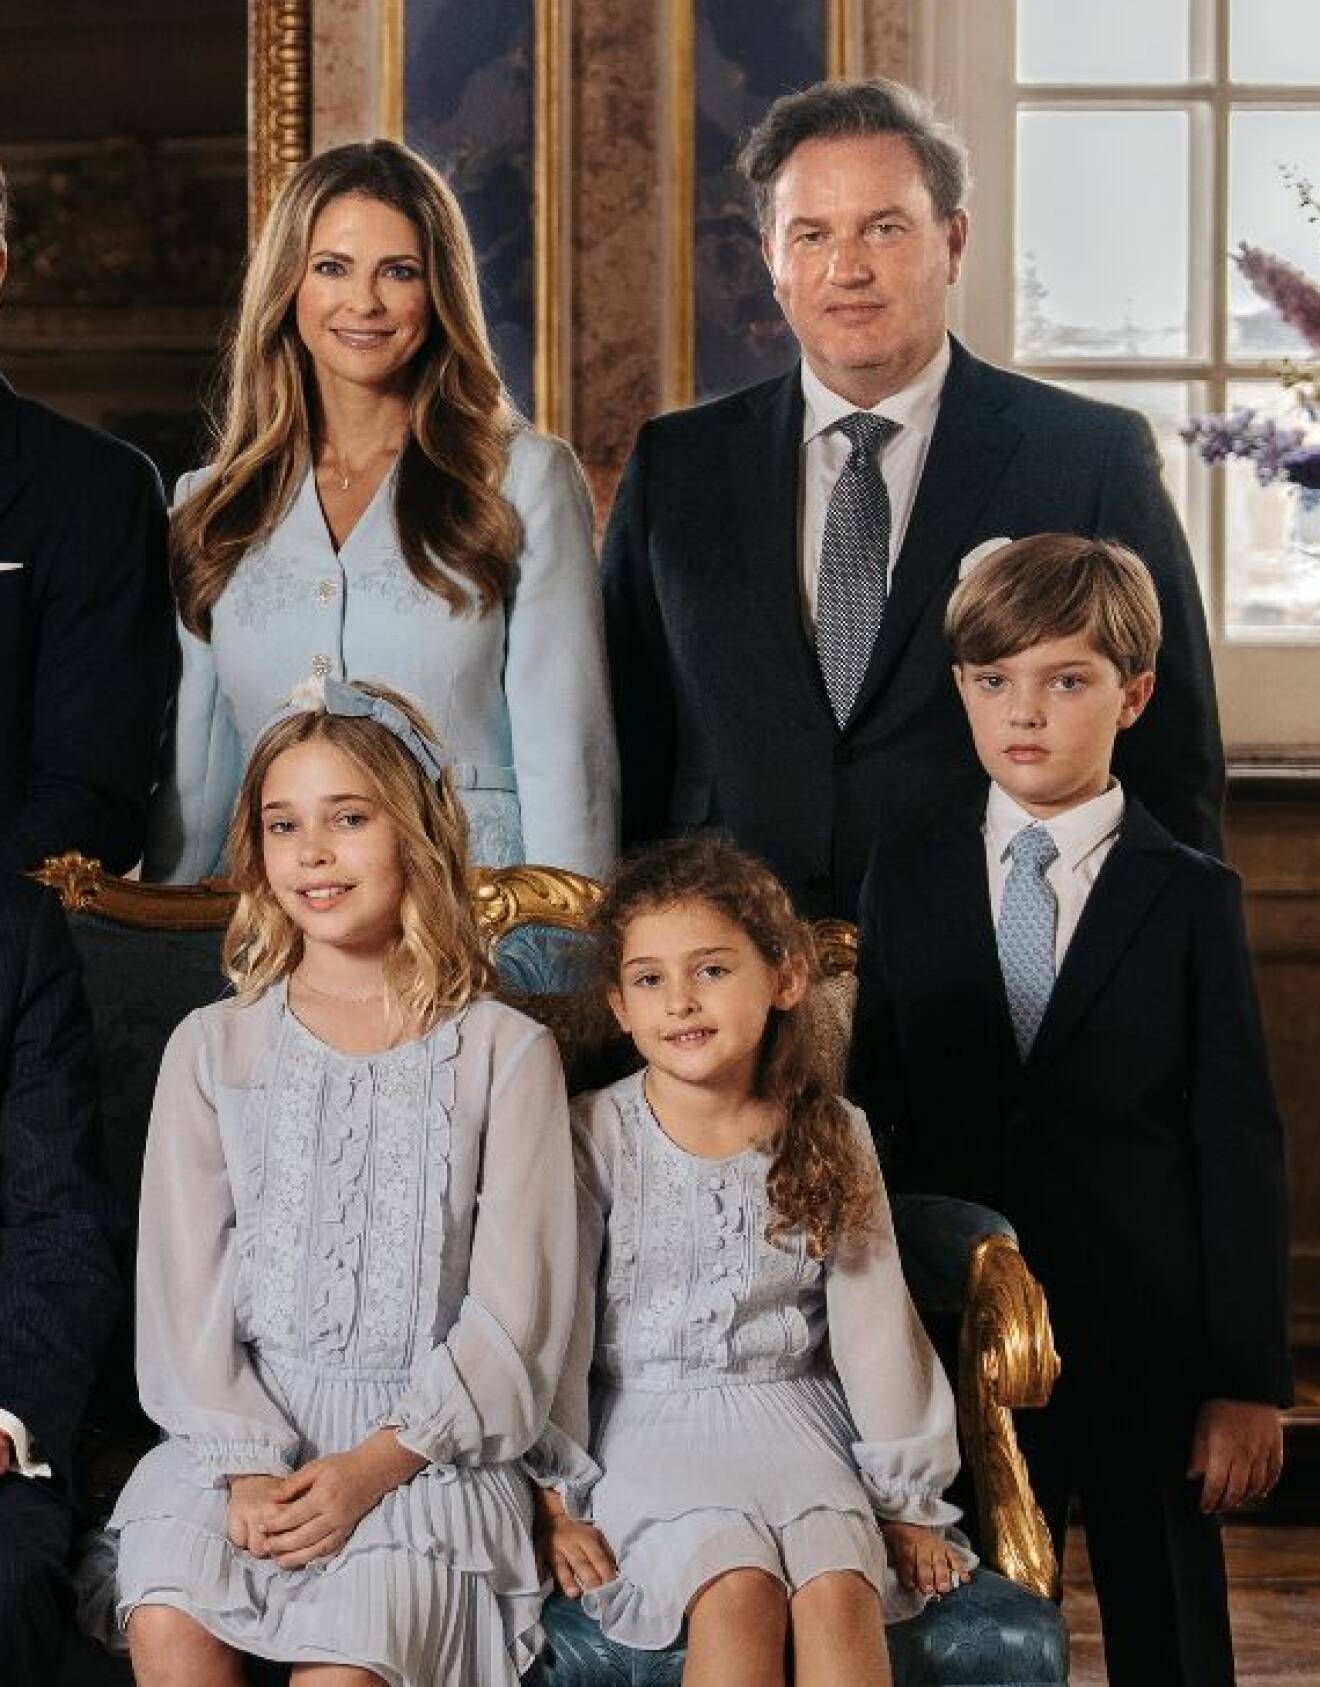 Prinsessan Madeleine och Chris O’Neill med sina barn prinsessan Leonore, prinsessan Adrienne och prins Nicolas på hovets nya officiella bild 2023